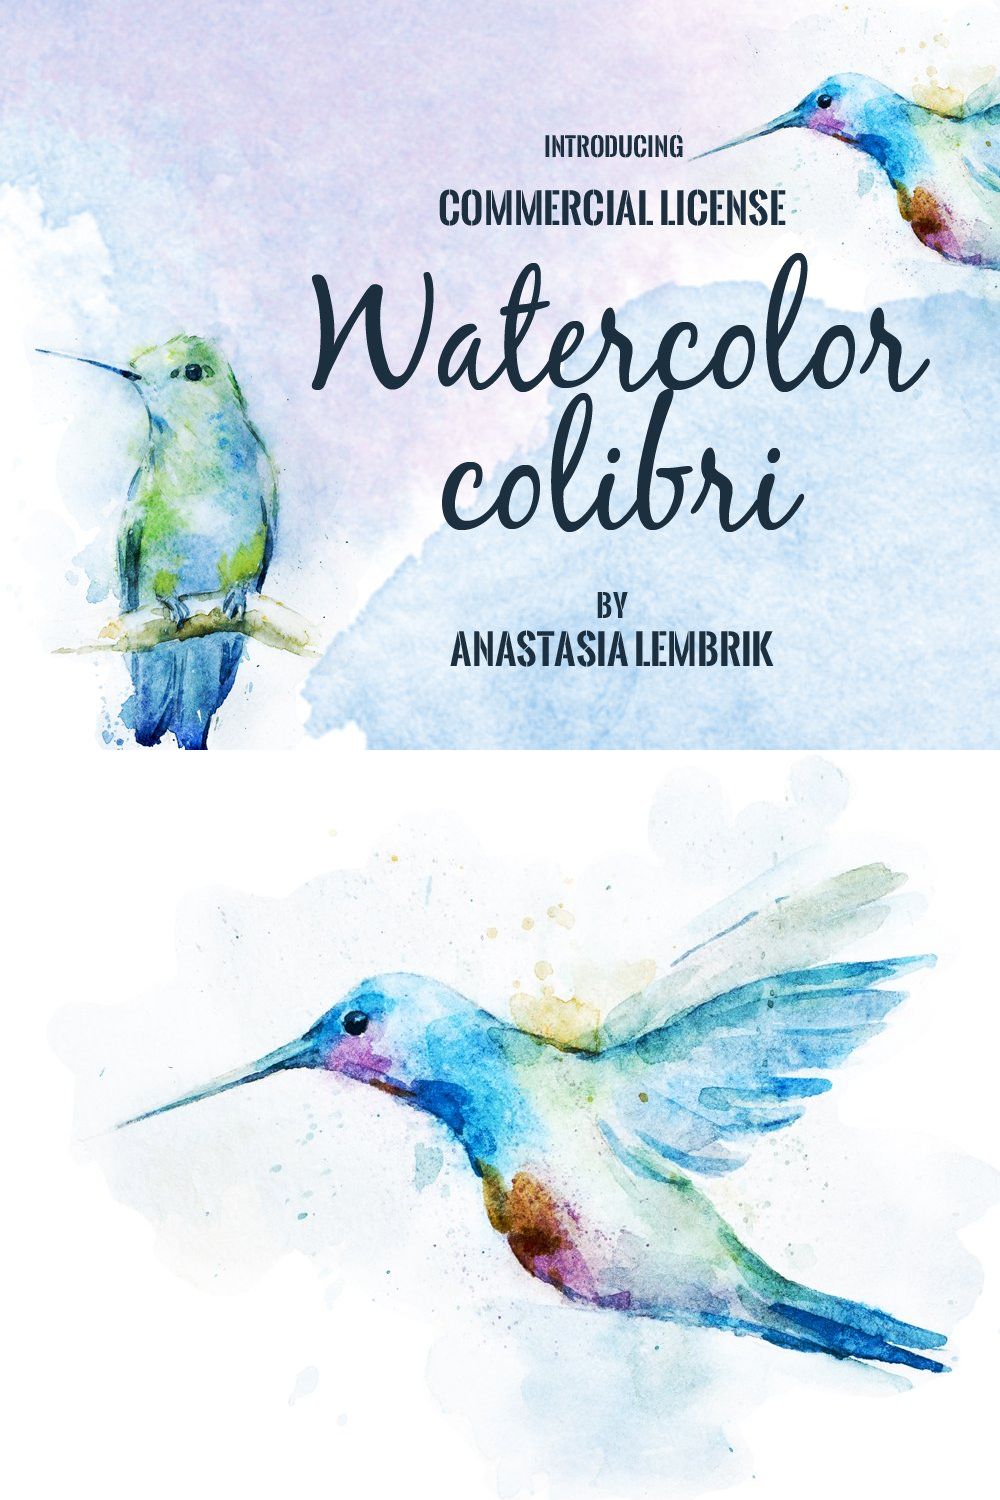 Watercolor colibri set pinterest preview image.